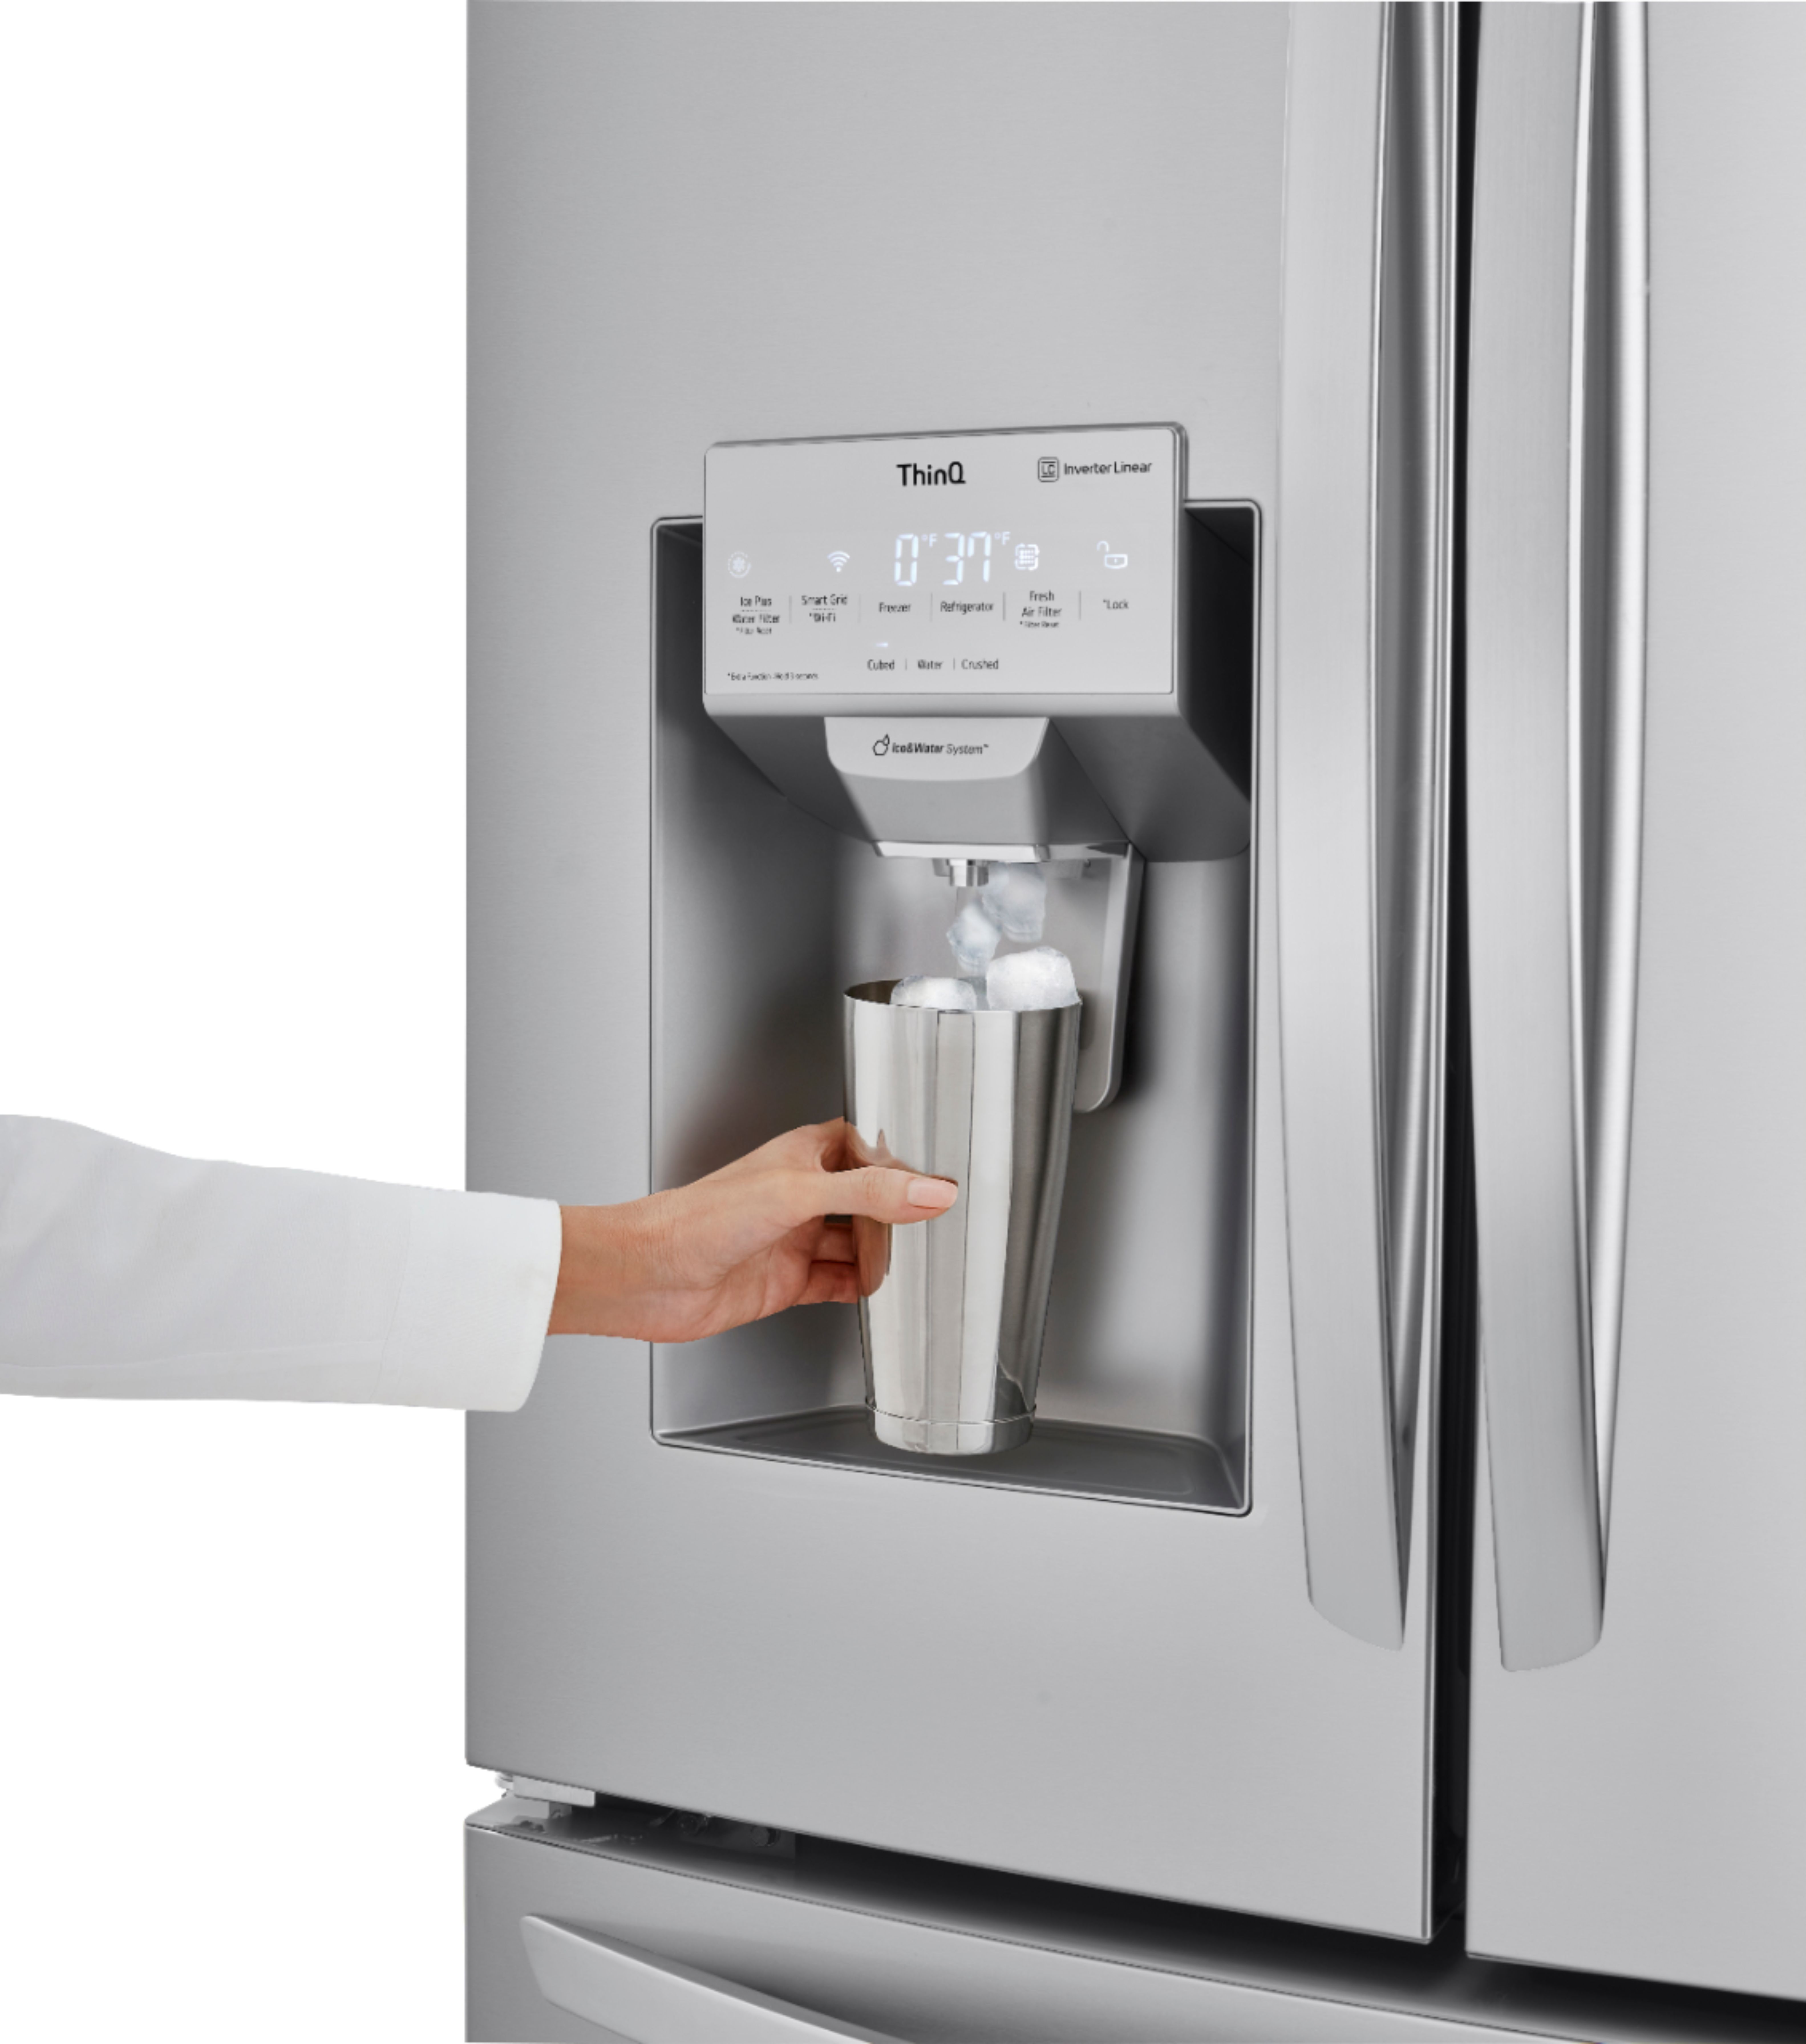 LG 36 Counter Depth French Door Refrigerator 22 cu. ft. Smart